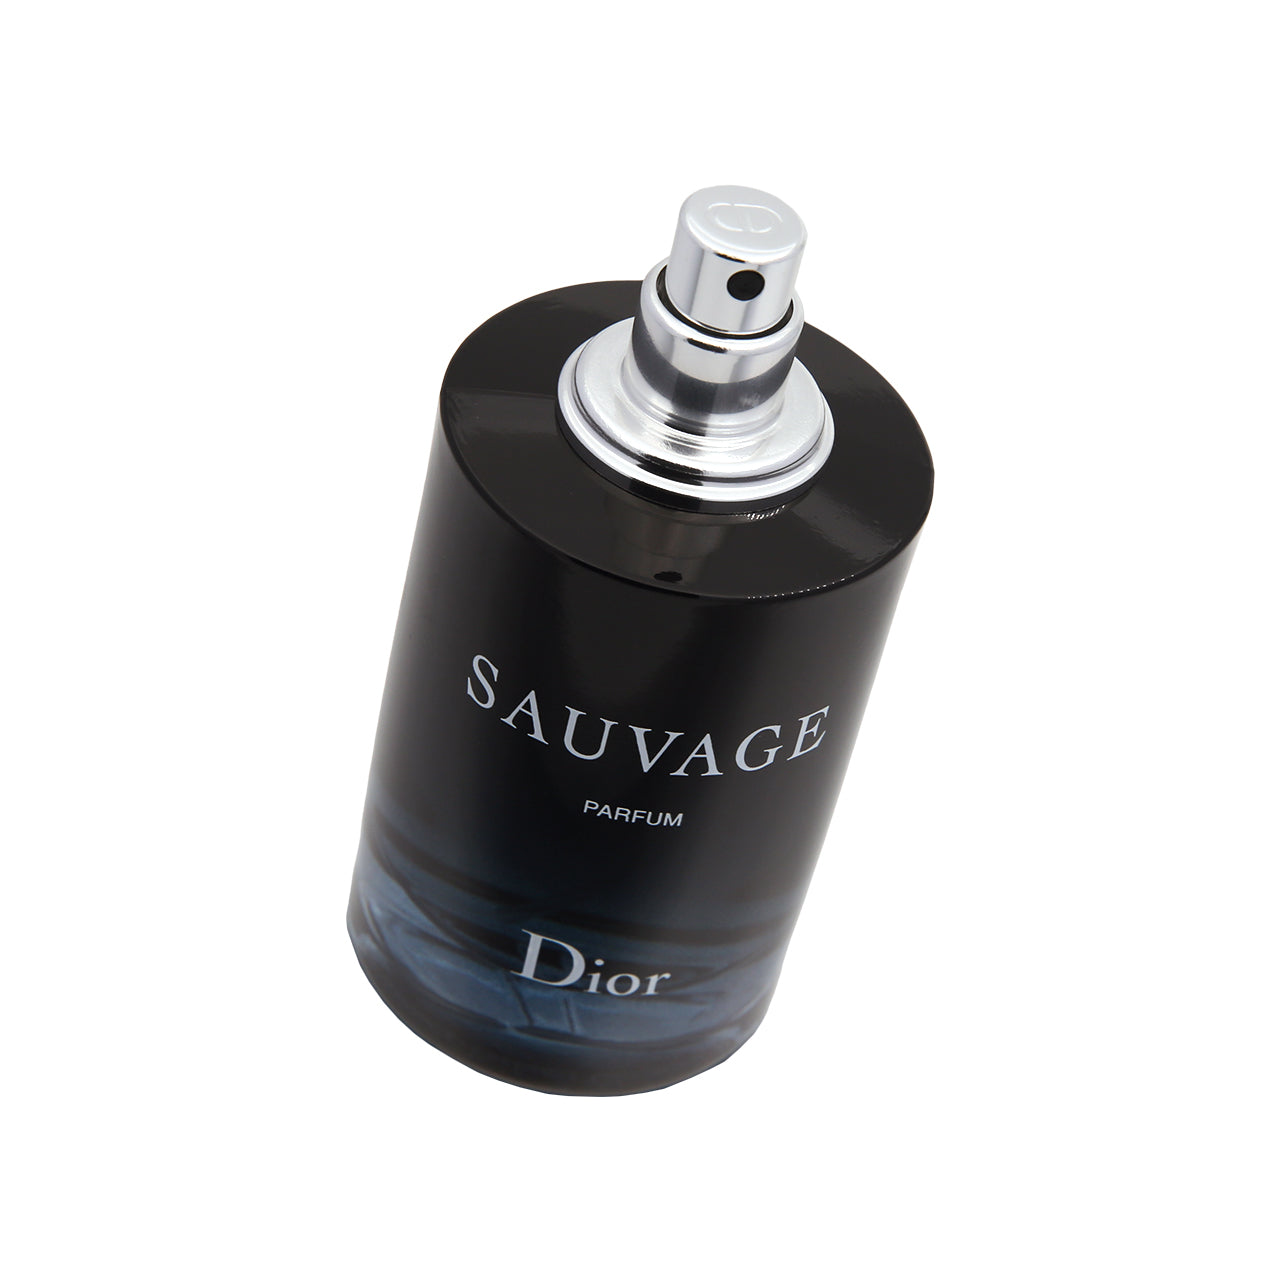 Christian Dior Sauvage Parfum 60ml | Sasa Global eShop